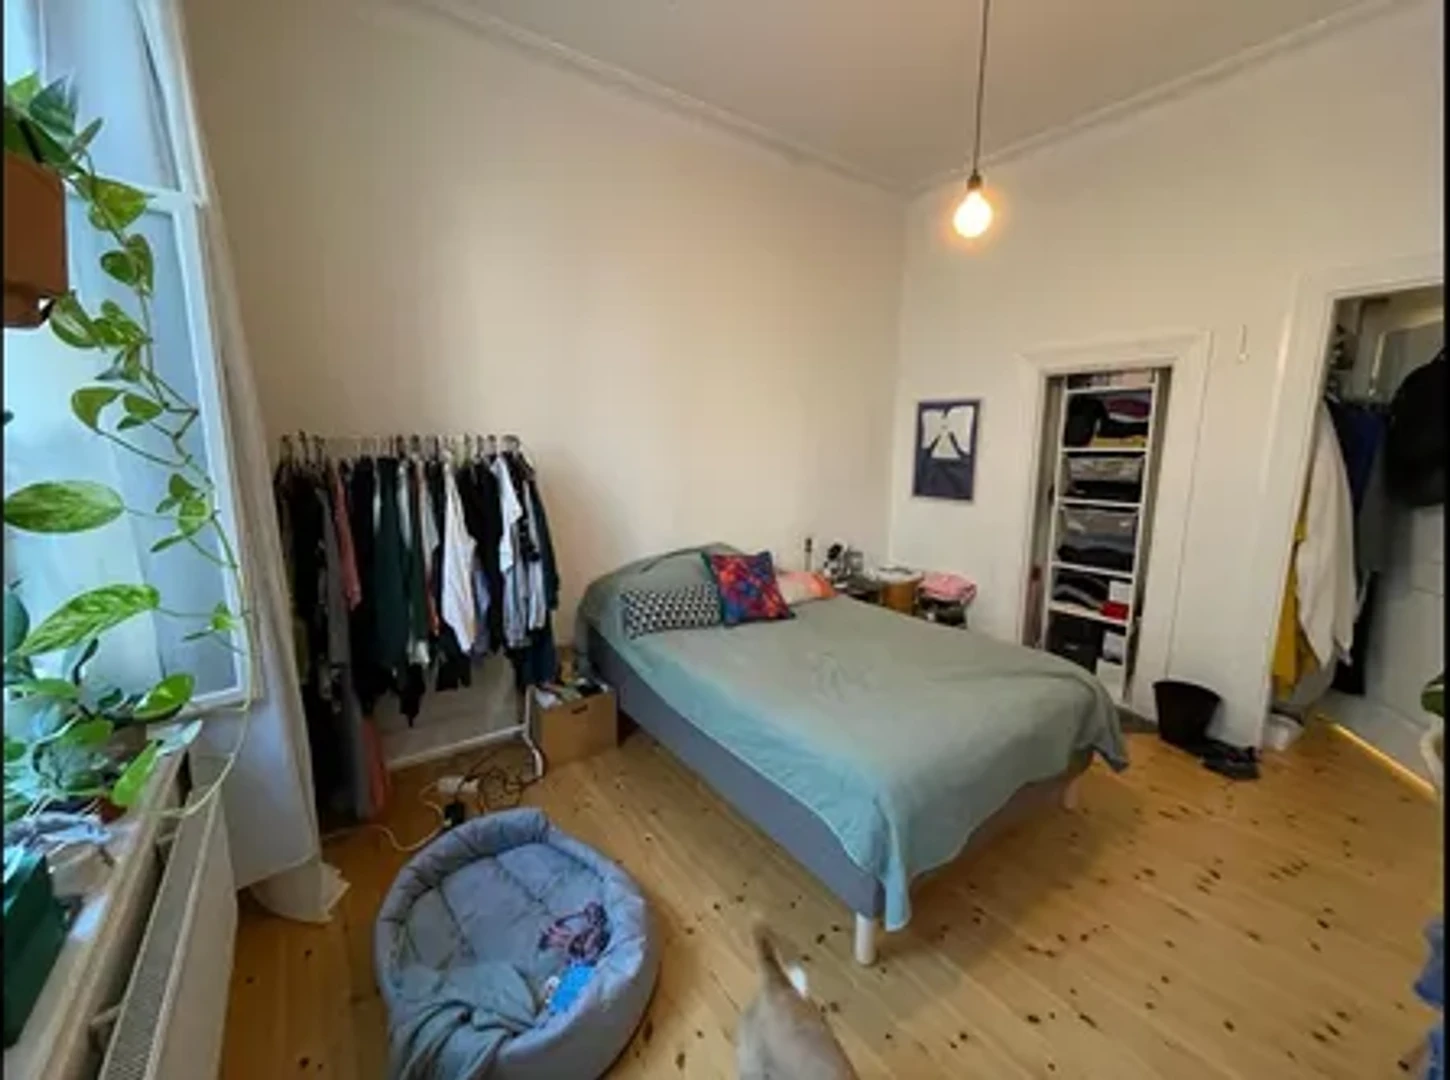 Pokój do wynajęcia we wspólnym mieszkaniu w Malmö